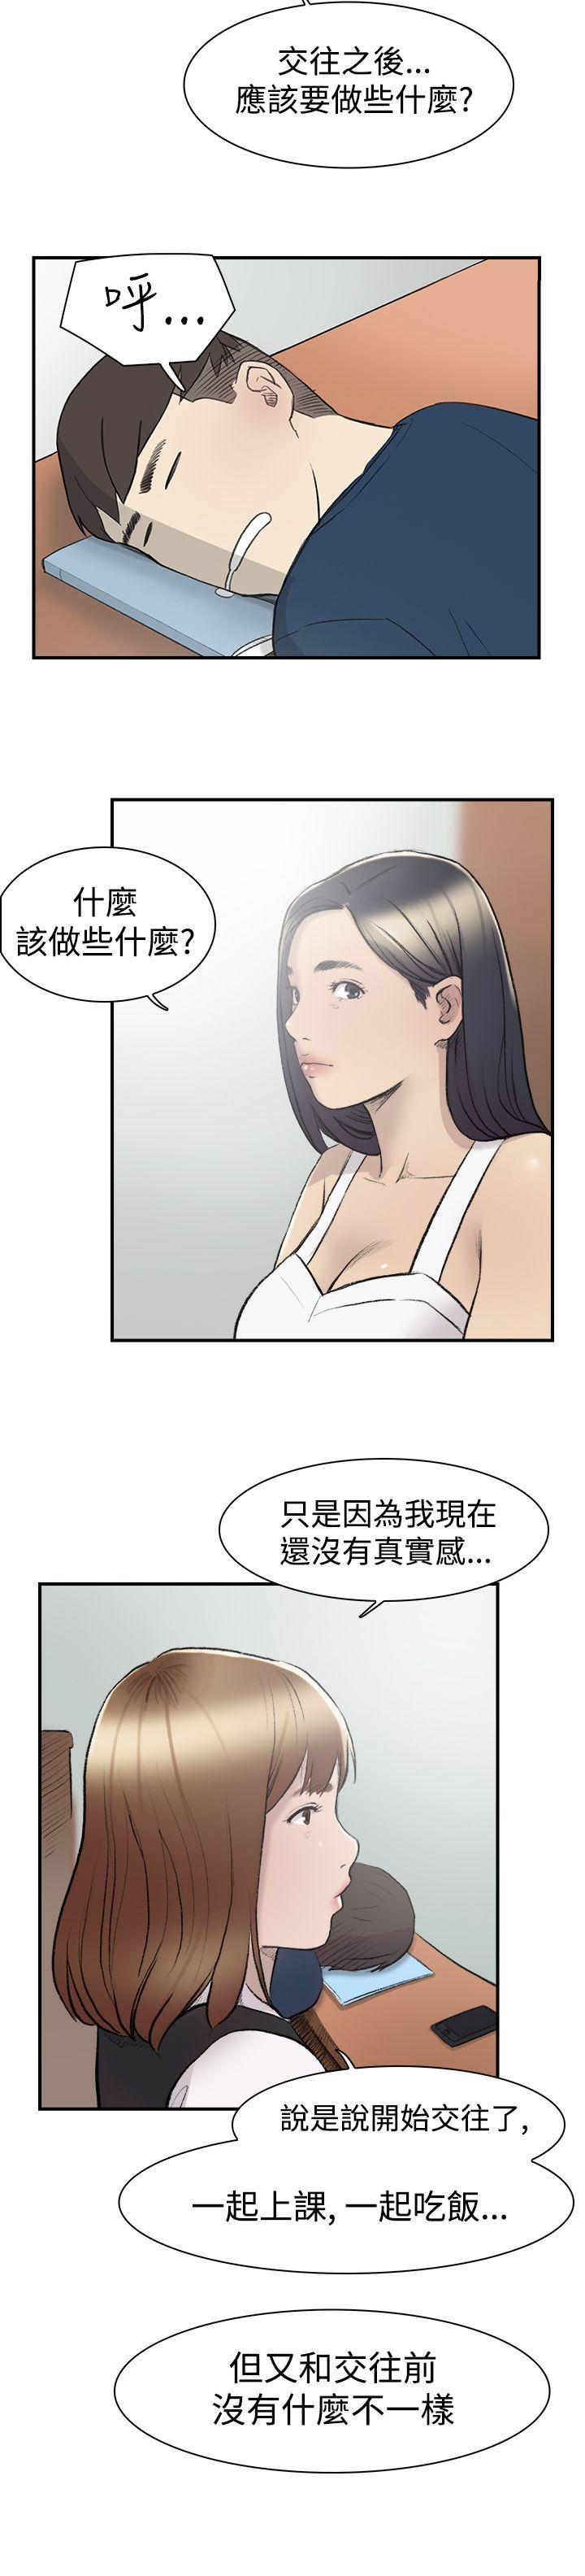 韩国污漫画 雙重戀愛 第13话 26